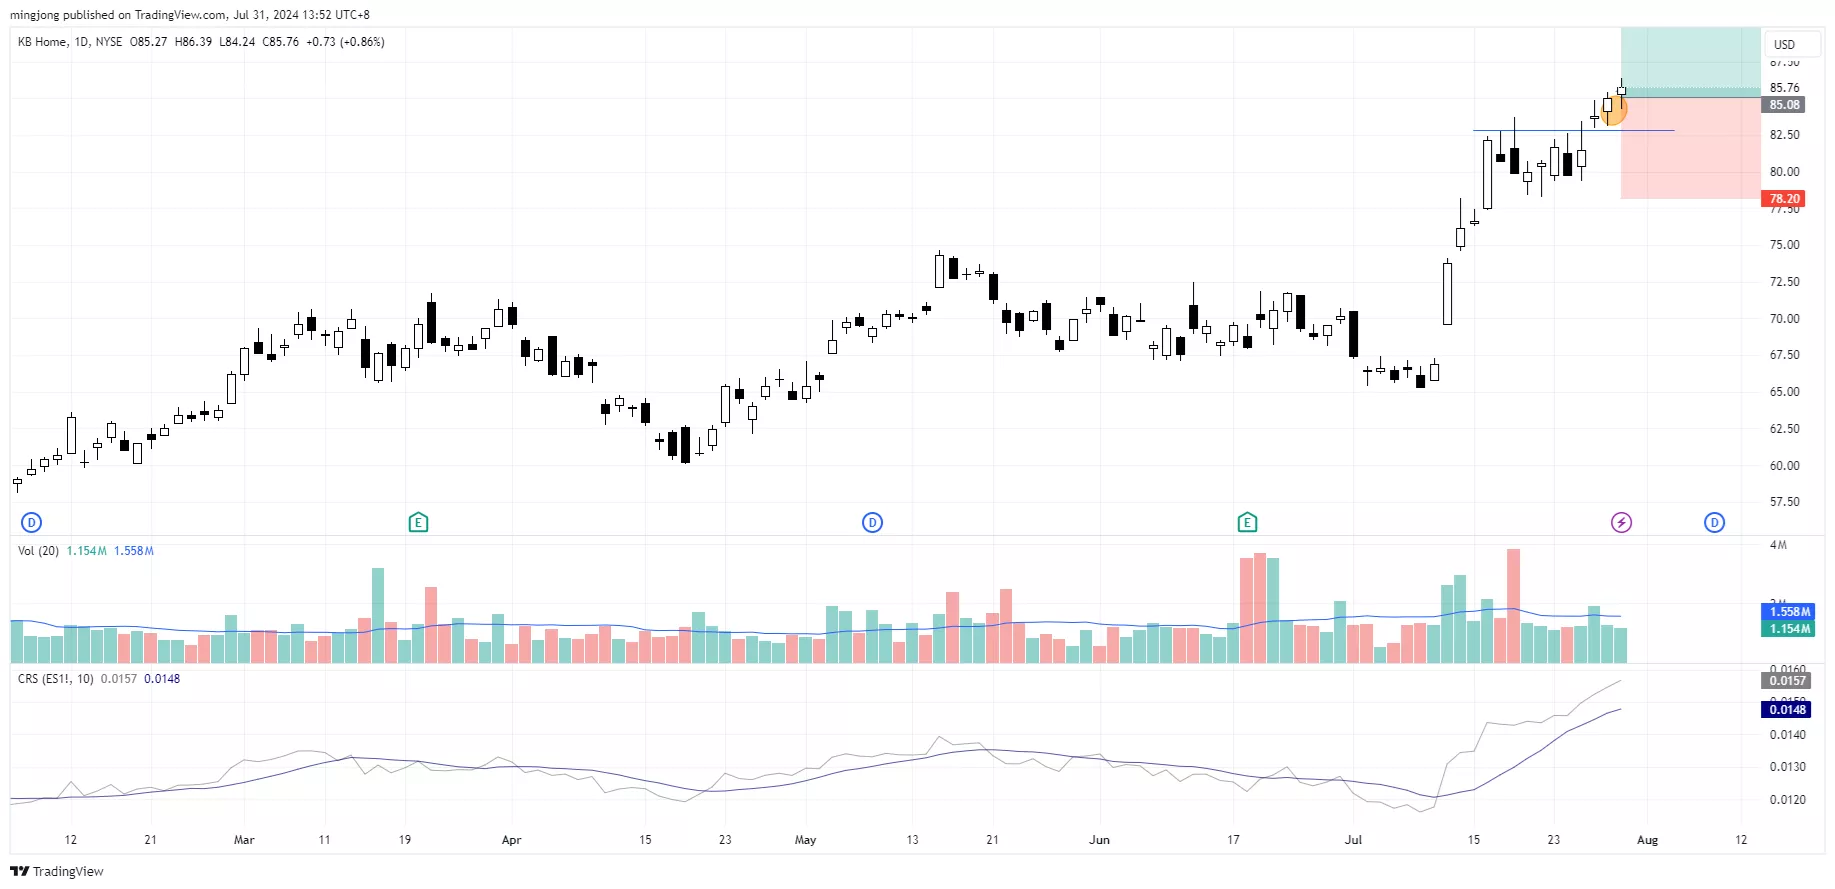 KBH stock buy signal